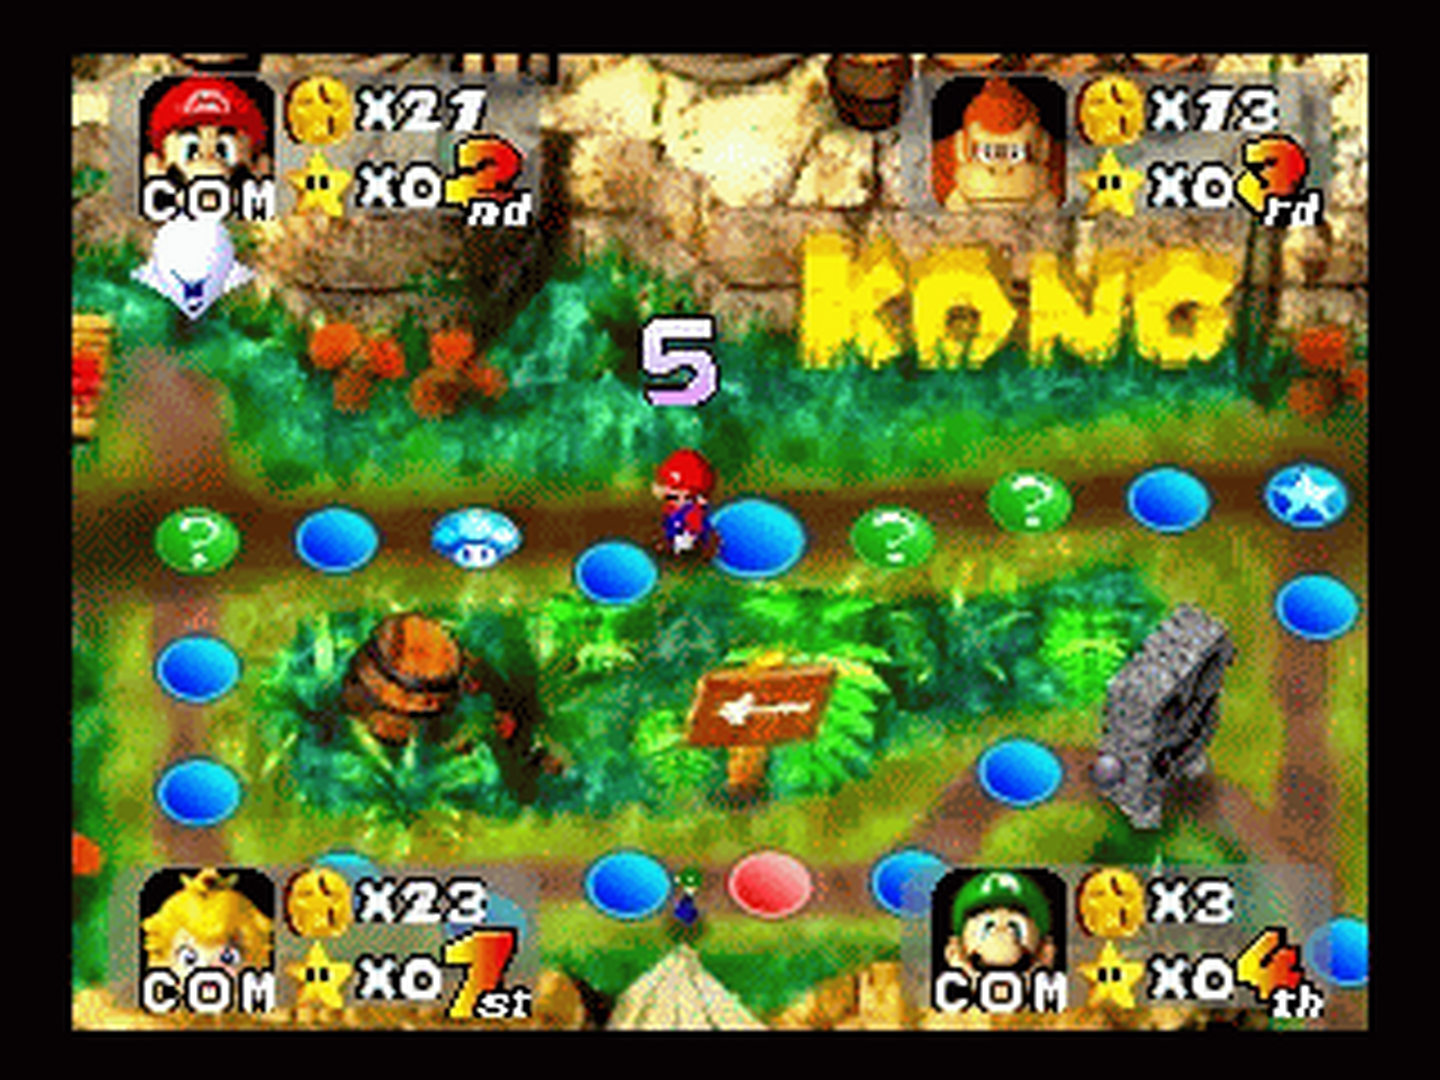 N64 GameBase Mario_Party_(E)_(M3) Nintendo 1999